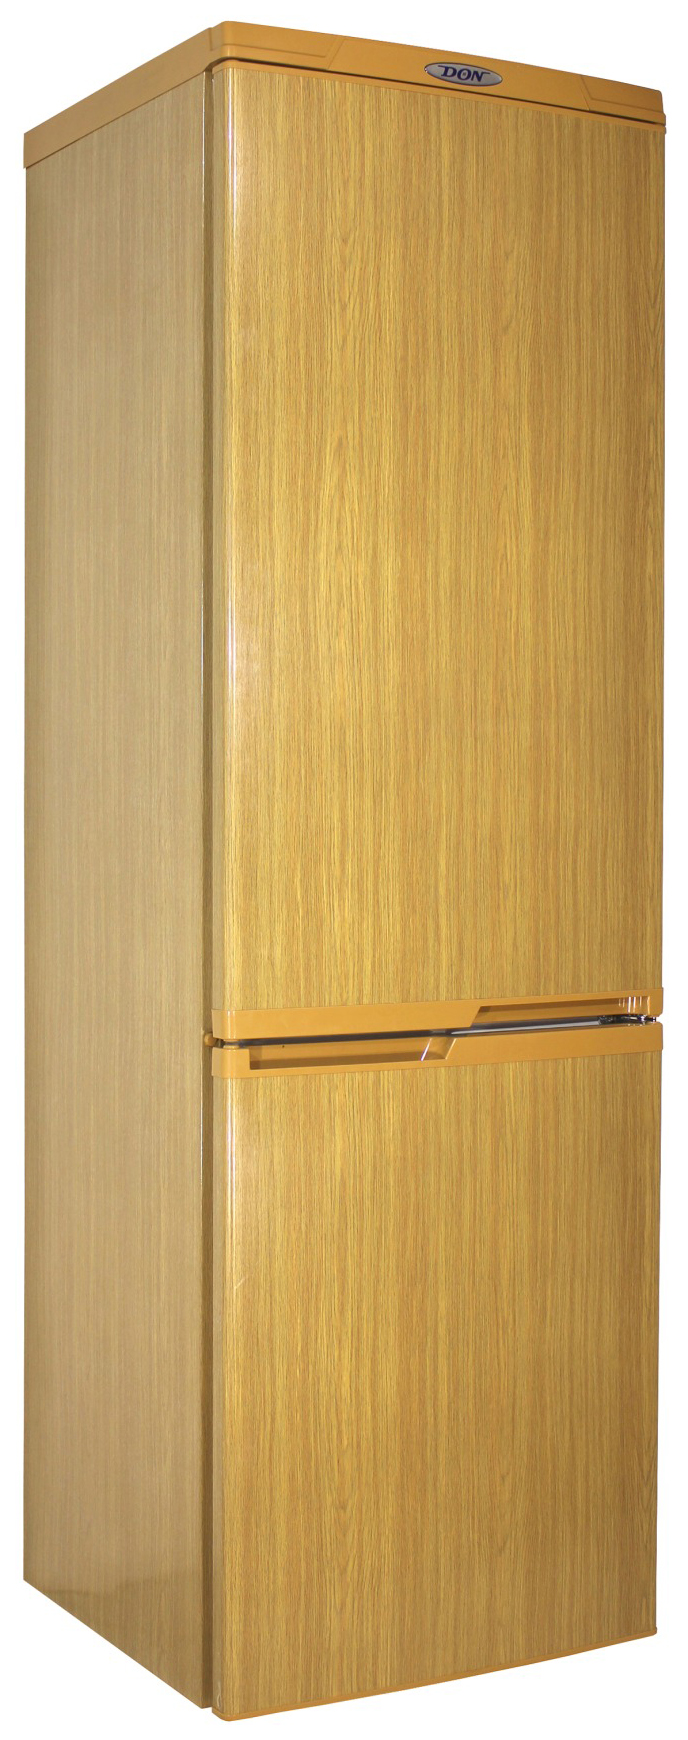 Холодильник DON R 291 DUB коричневый холодильник maunfeld mff83wd коричневый